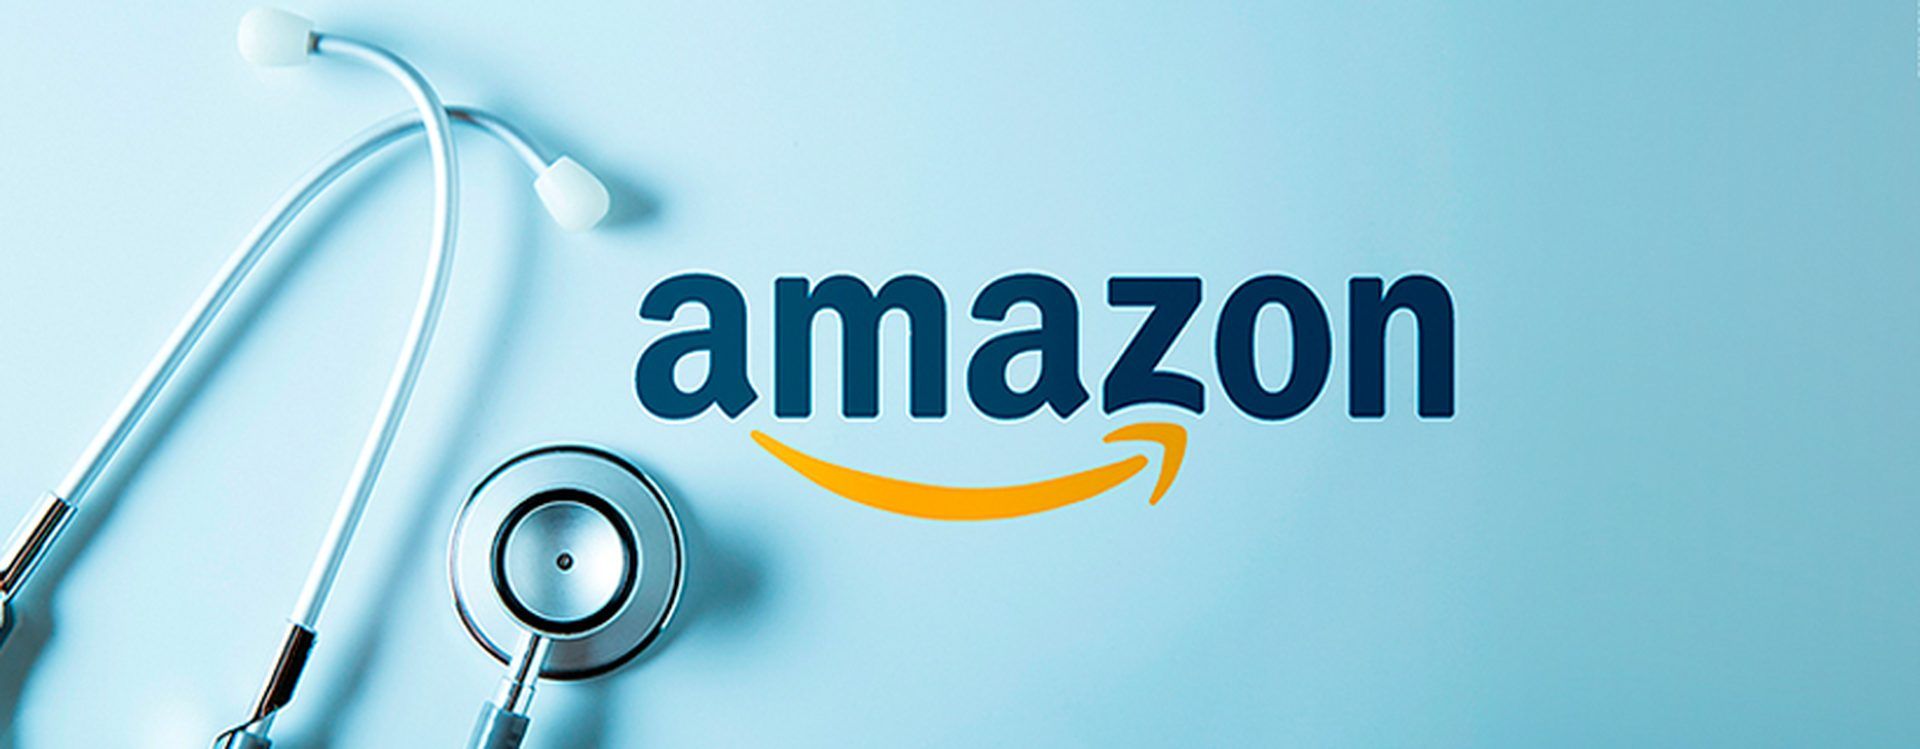 Amazon RxPass : Obtenez vos médicaments sur ordonnance auprès de la pharmacie Amazon